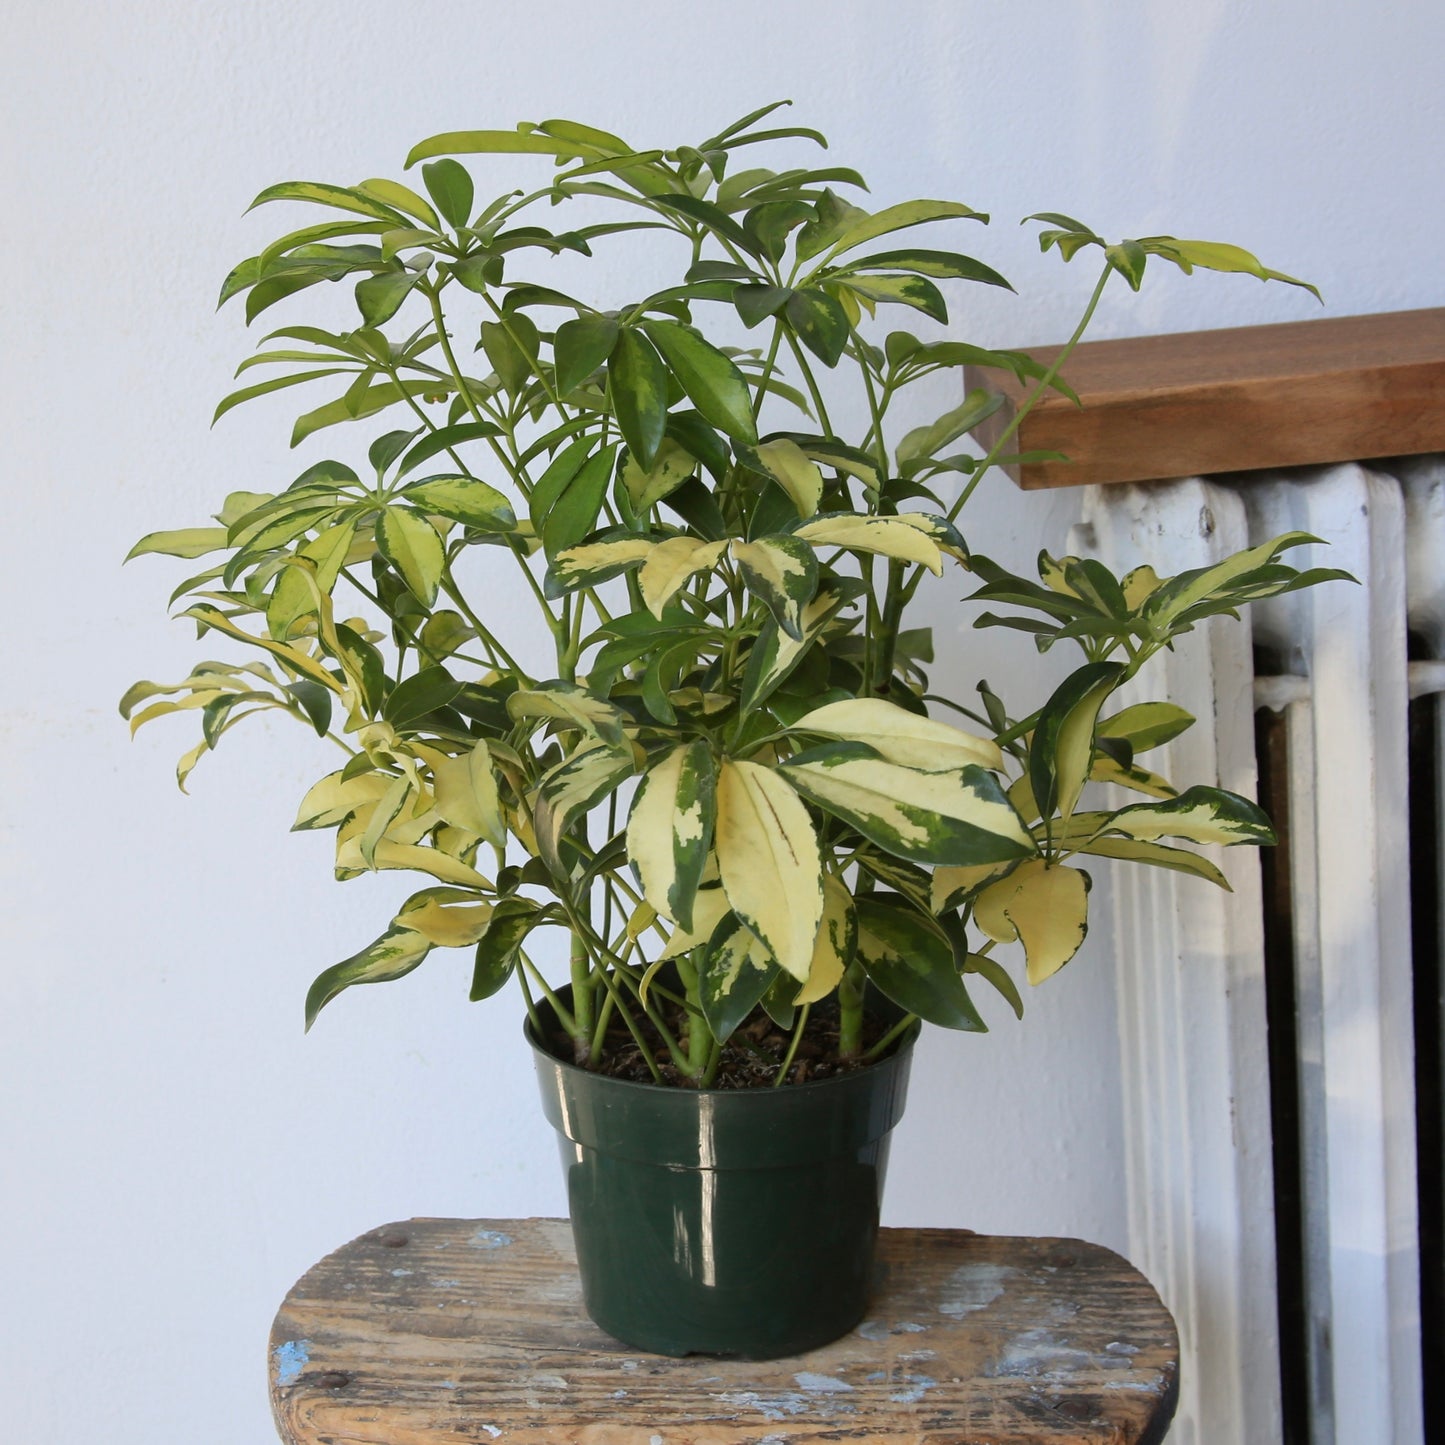 4" Schefflera Trinette Plant